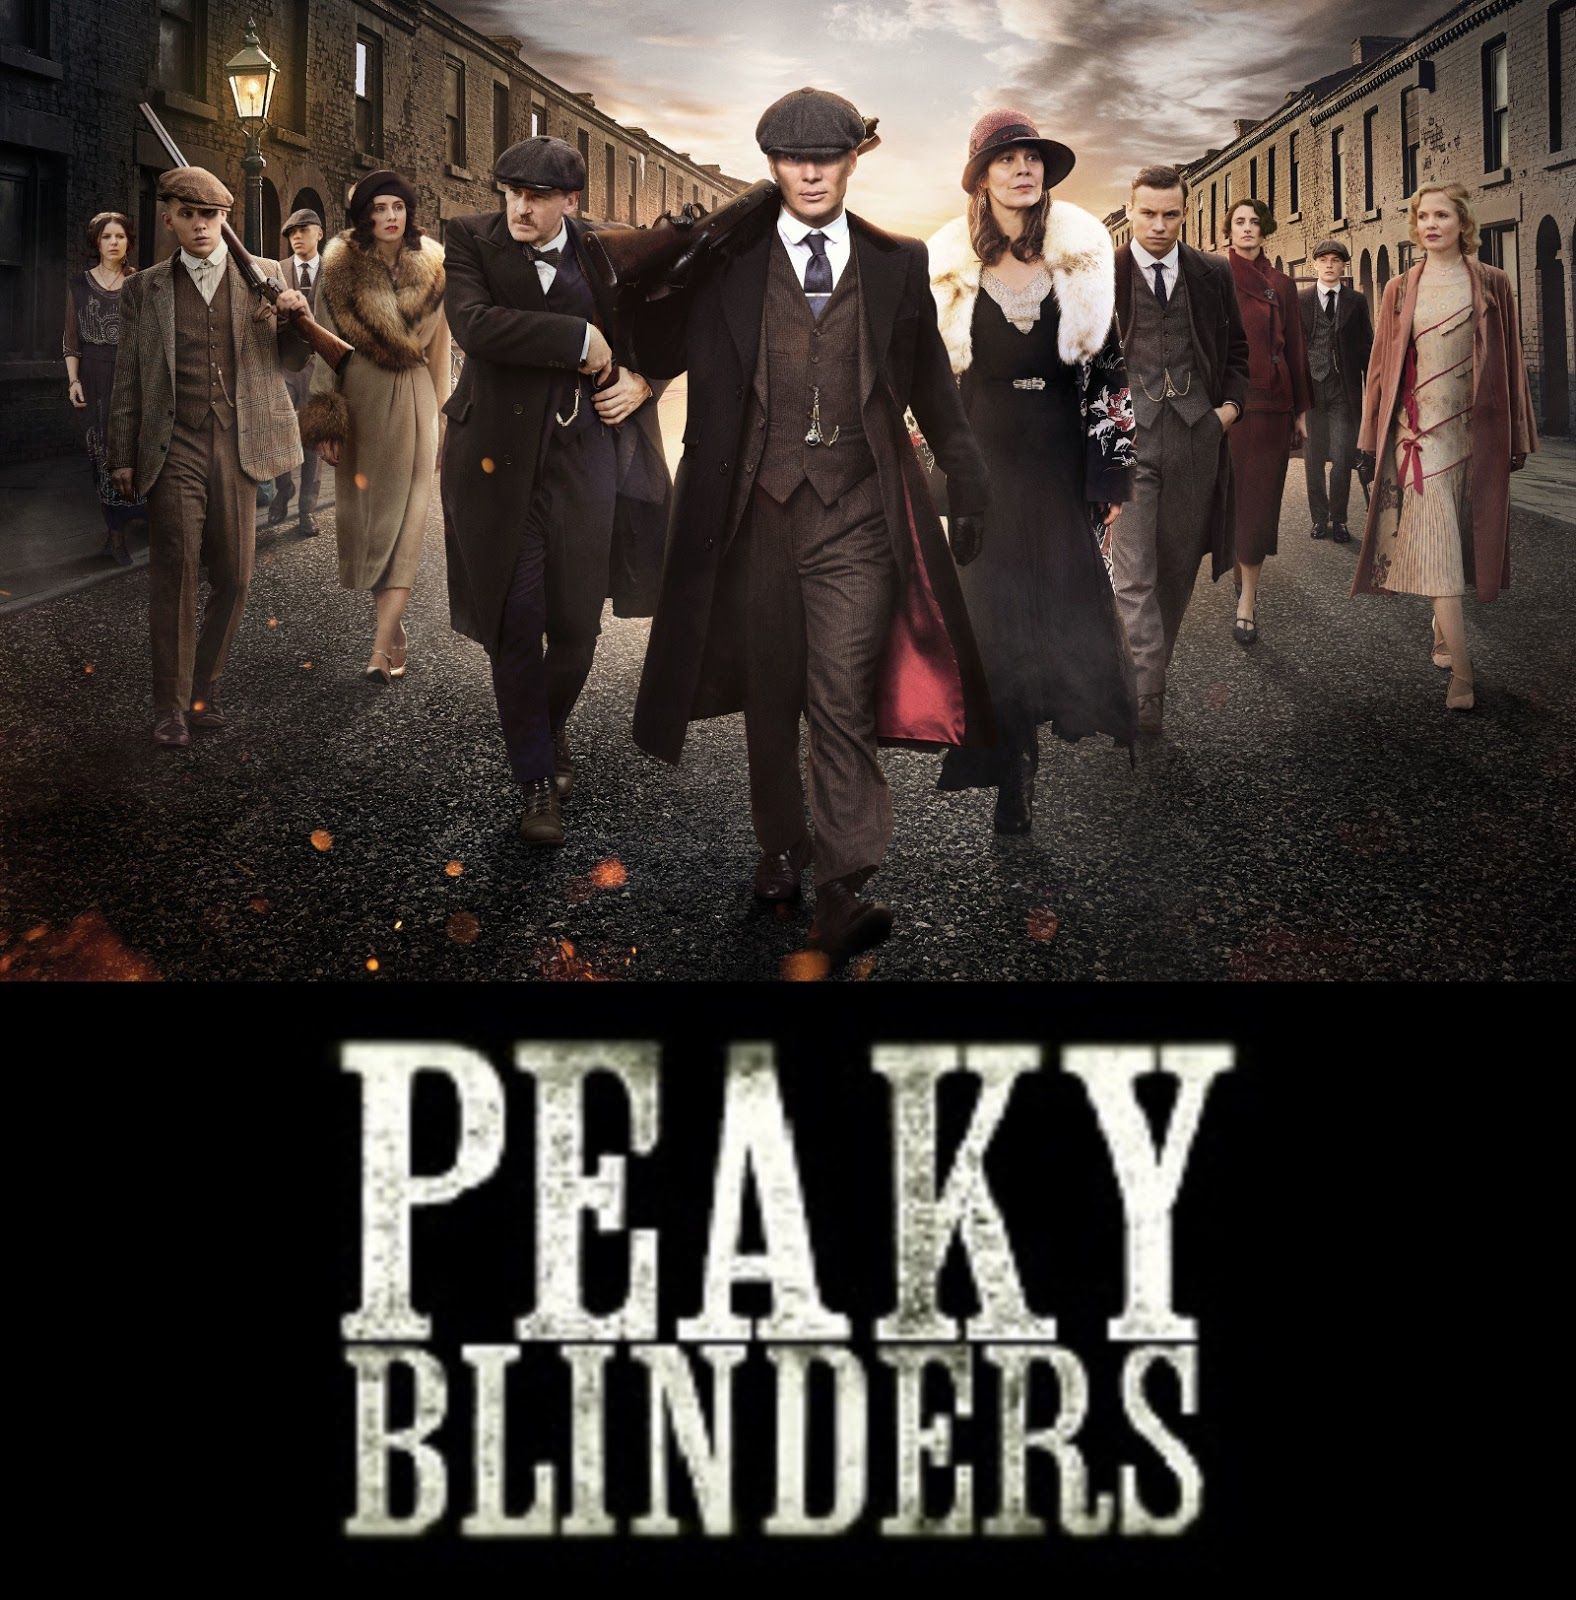 Peaky Blinders Promo Photo.